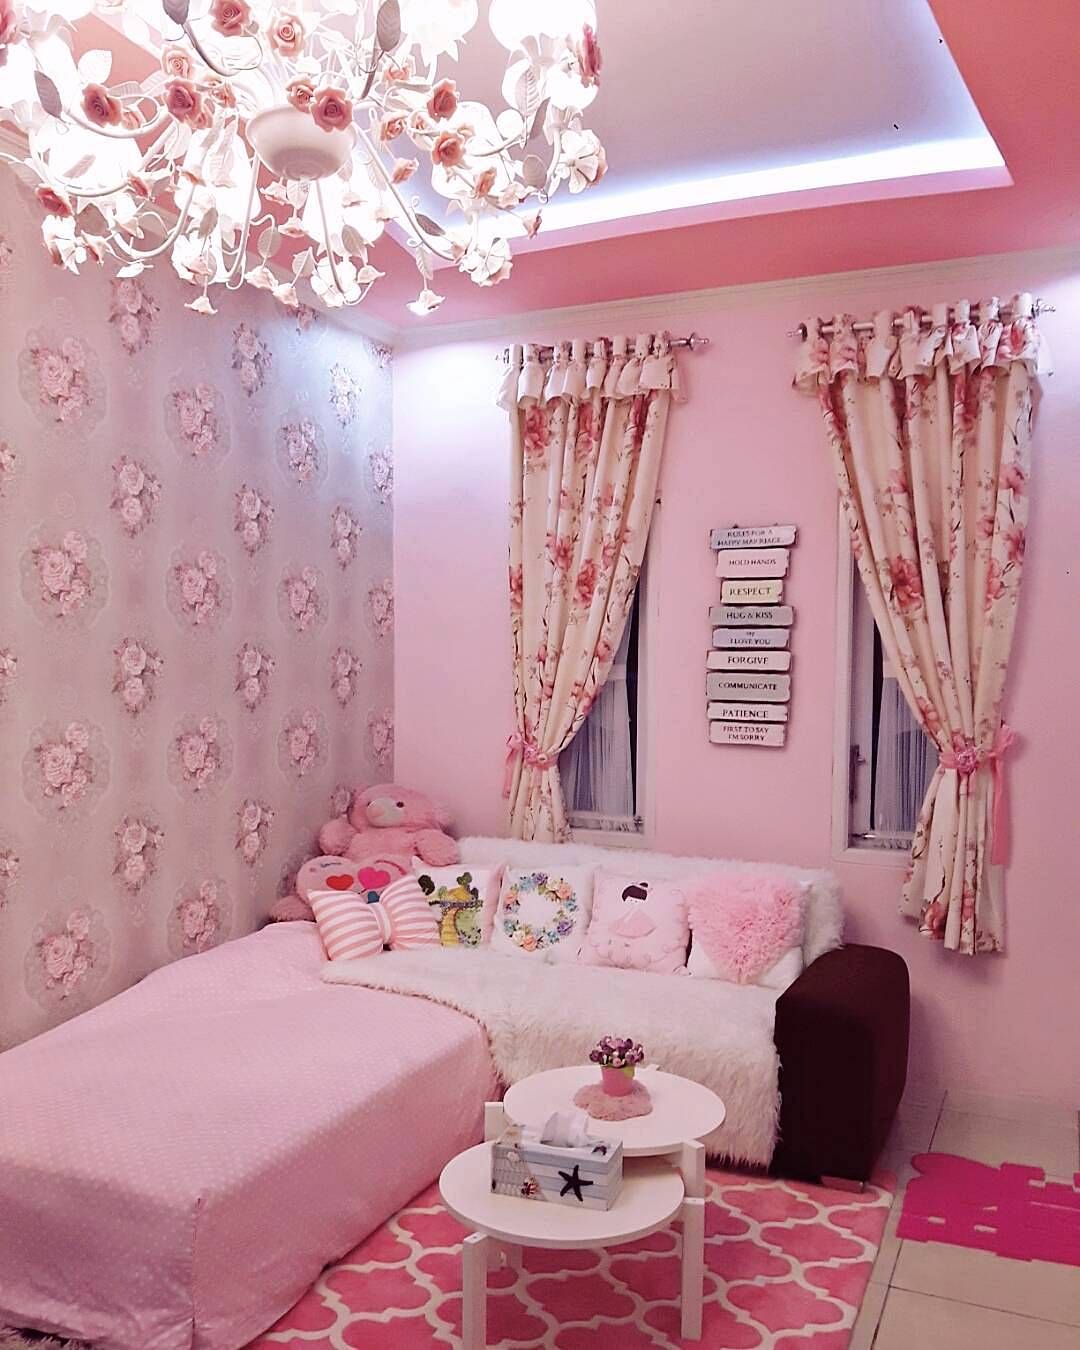 wallpaper dinding ruang tamu minimalis,pink,room,interior design,furniture,curtain